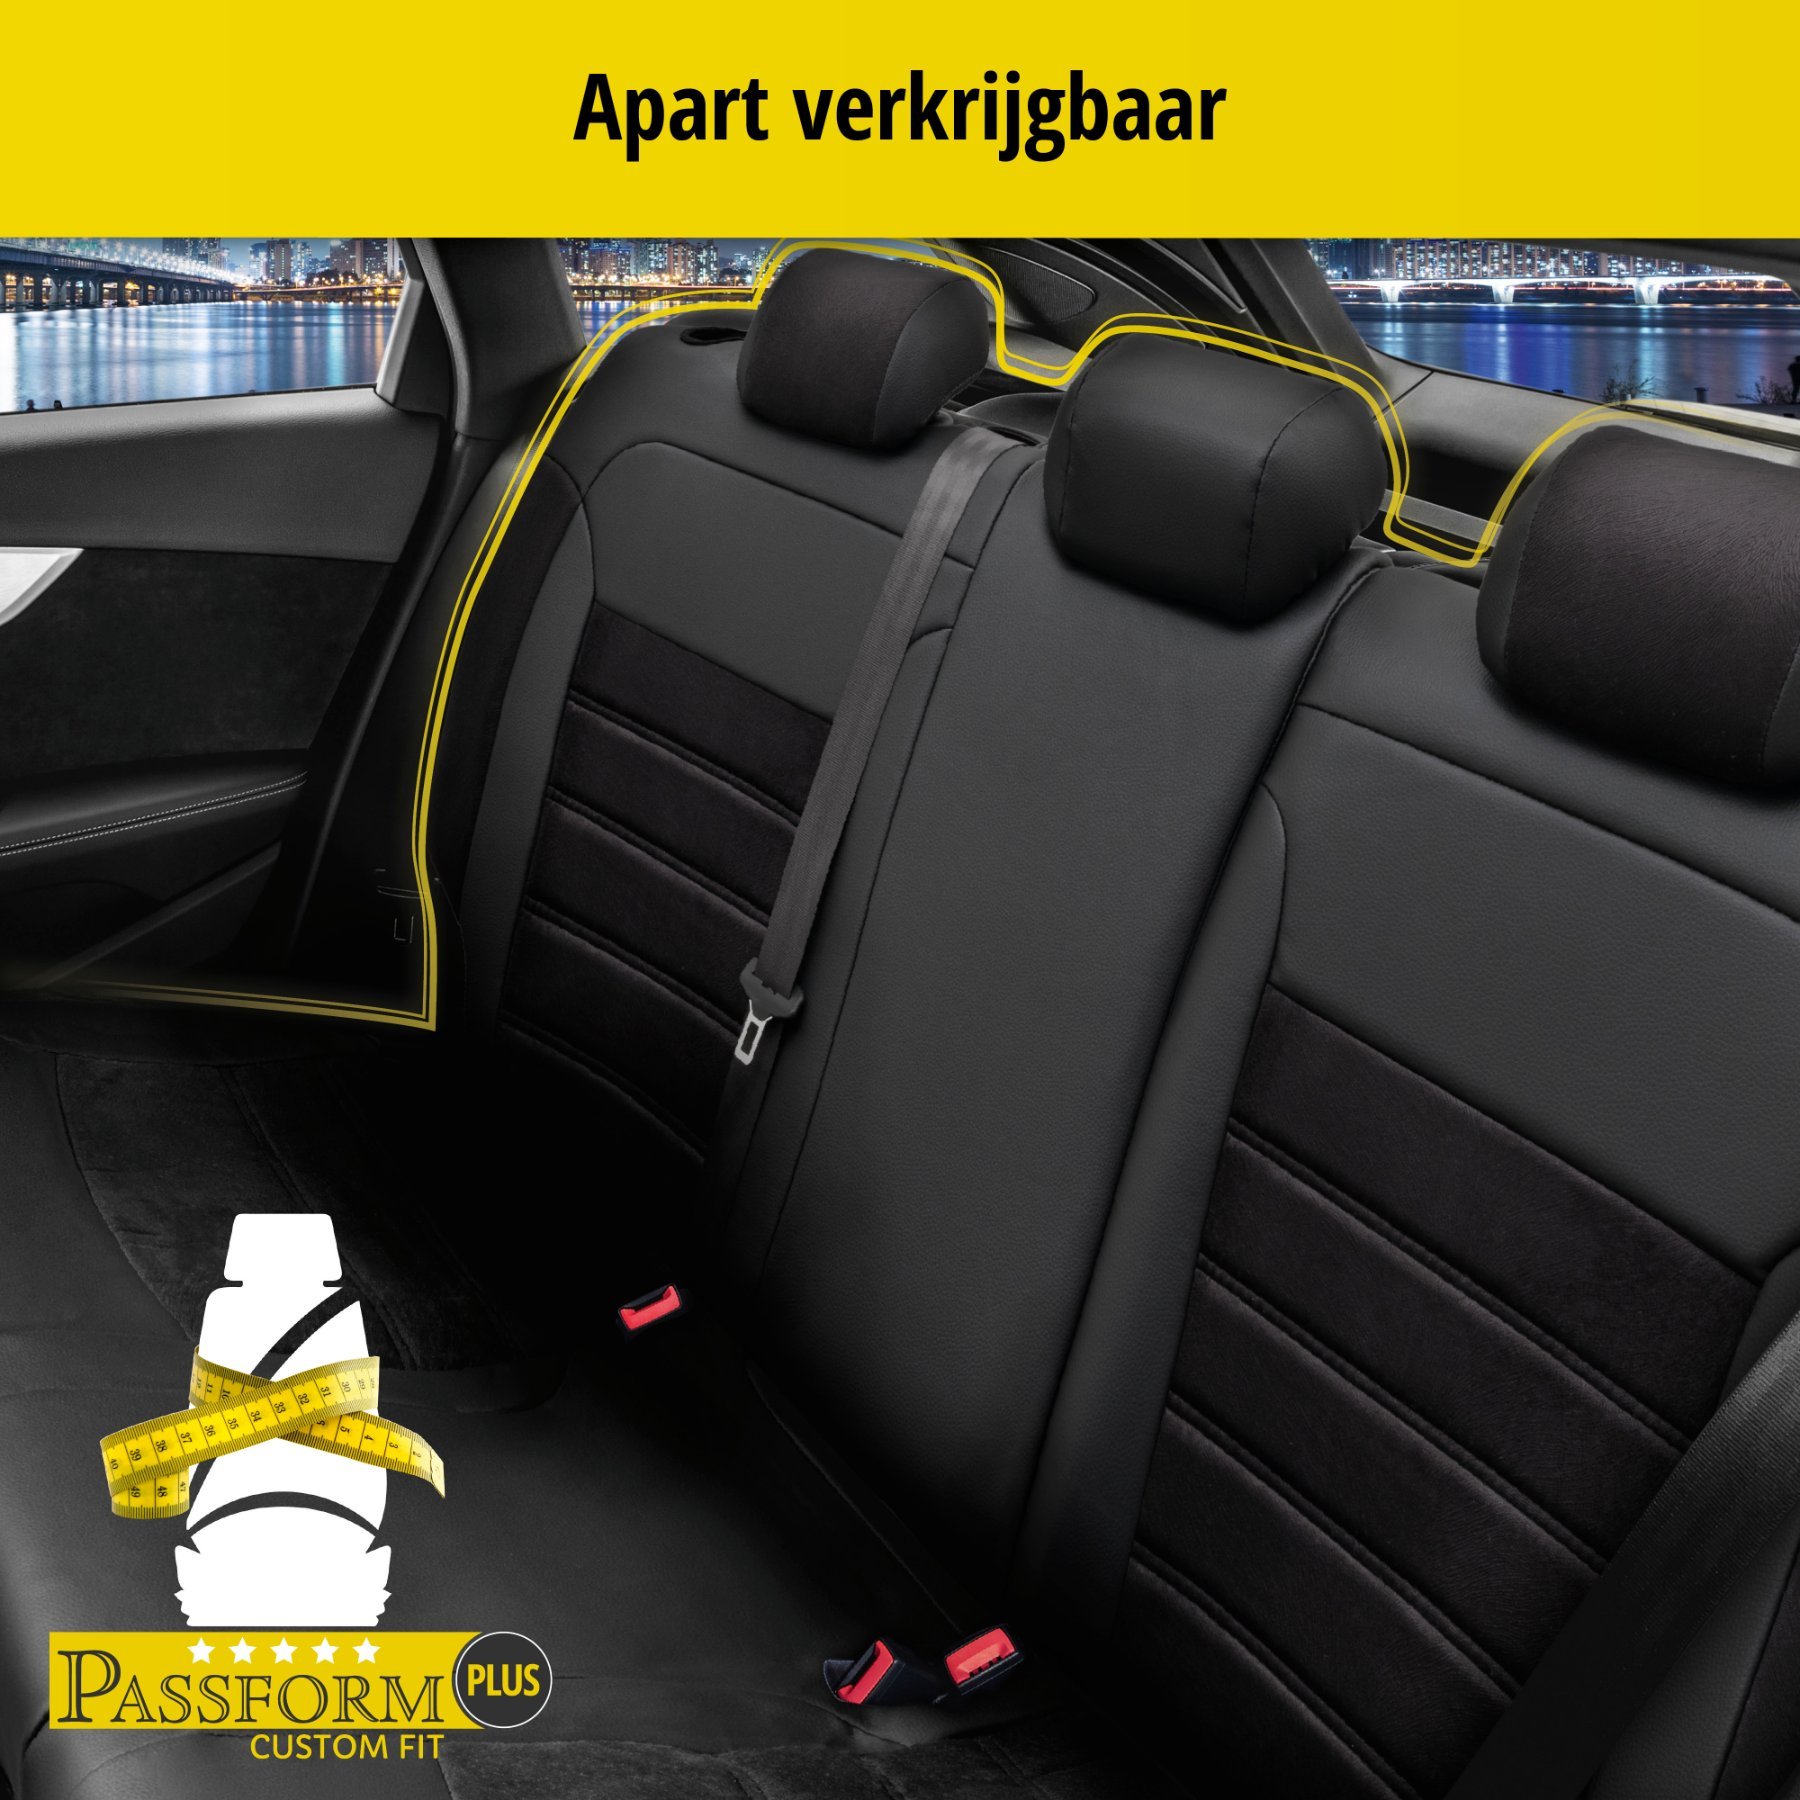 Auto stoelbekleding Bari geschikt voor VW Tiguan 09/2007 - 07/2018, 2 enkele zetelhoezen voor standard zetels